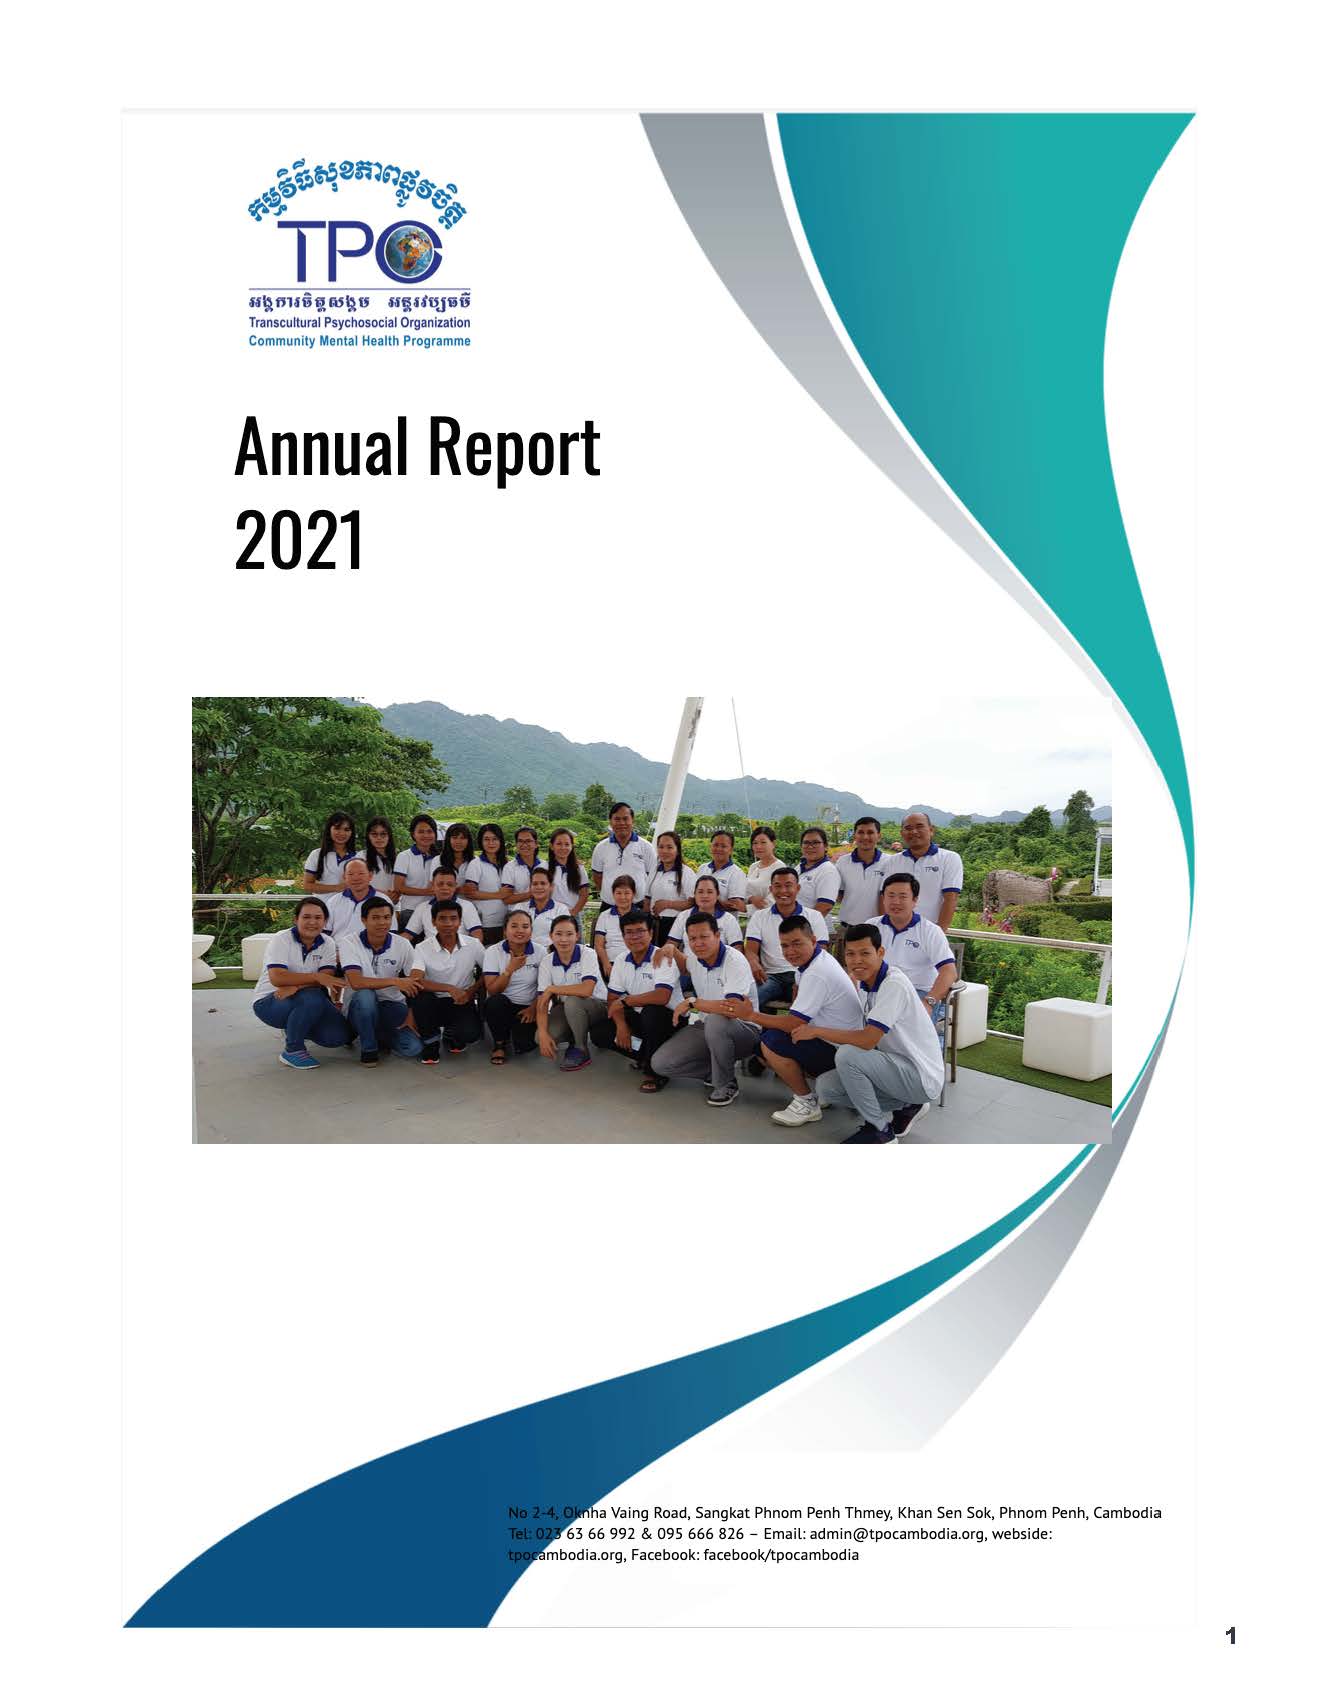 TPO Annual Report 2021